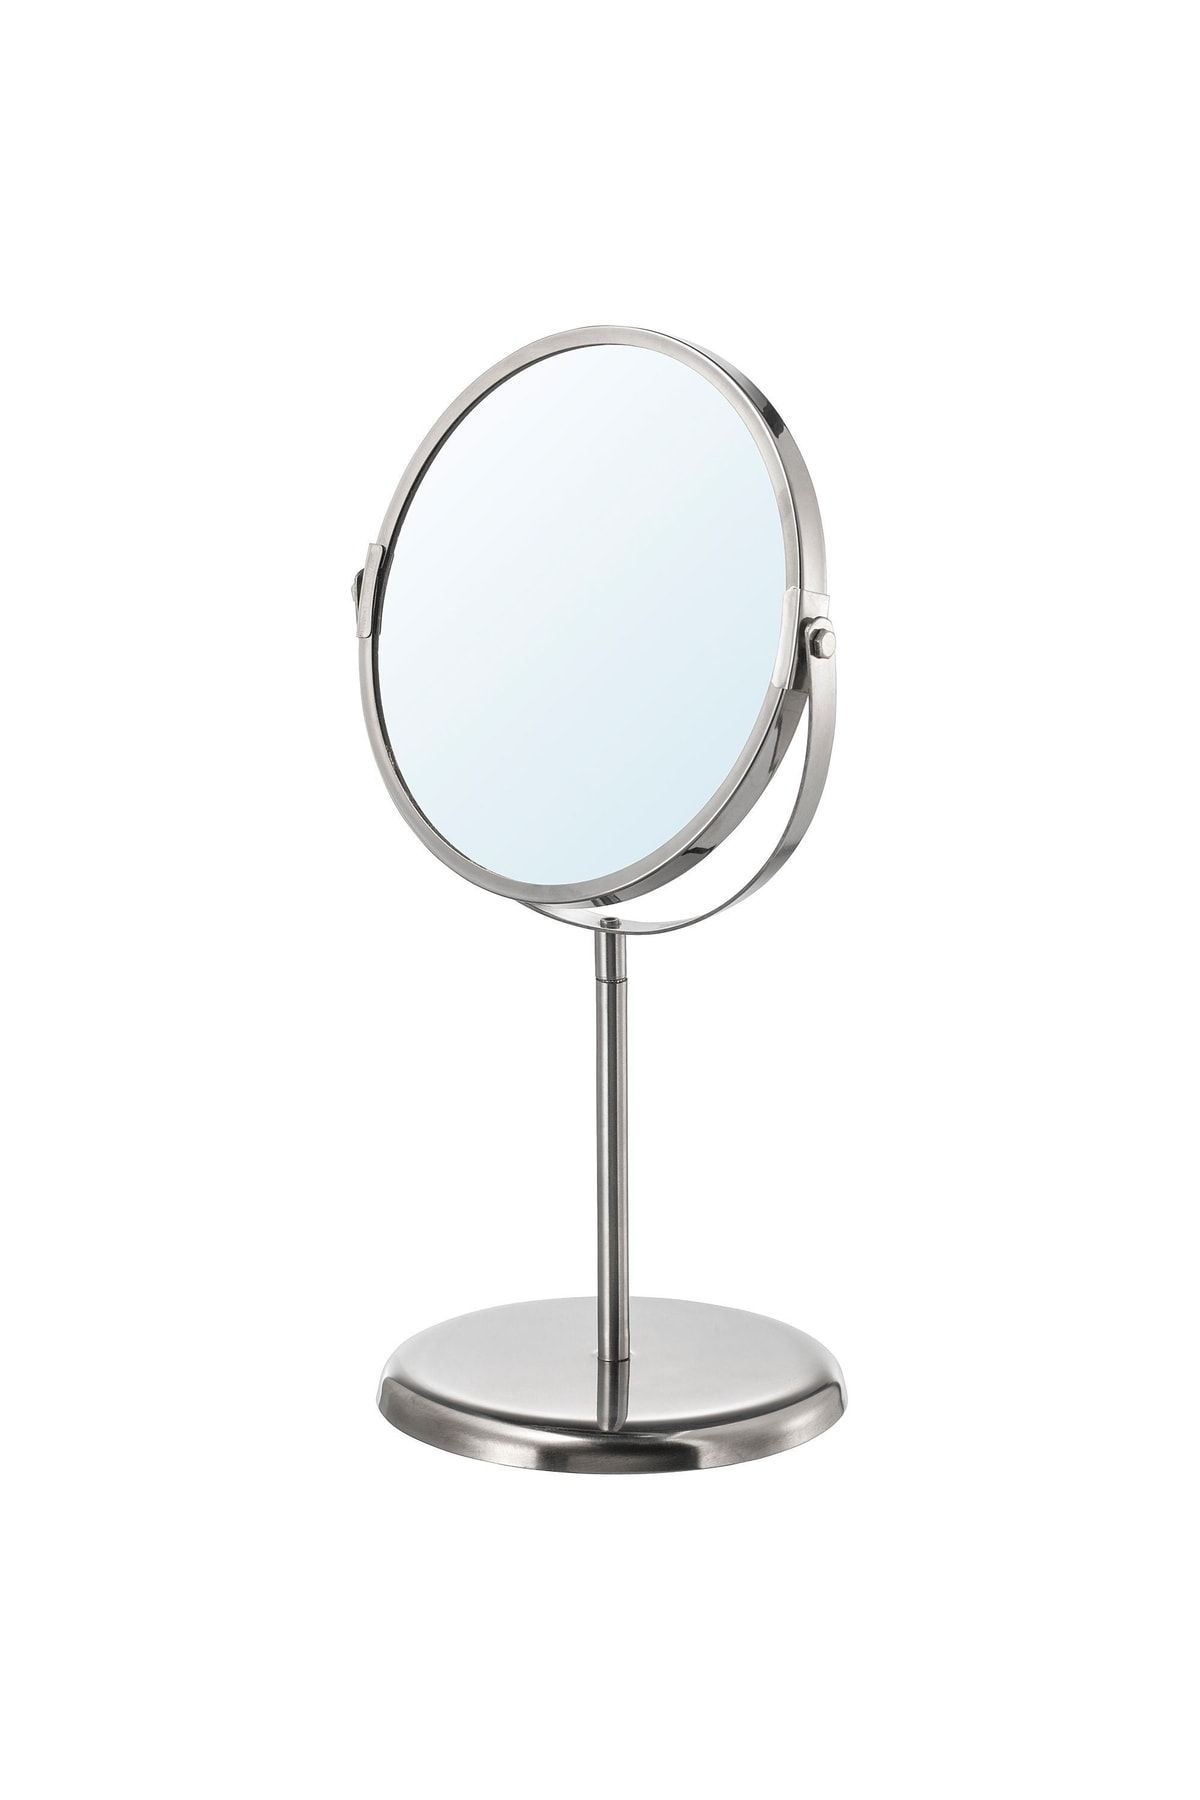 IKEA Büyüteçli Ayna Makyaj Aynası Paslanmaz Çelik Ayna 17 Cm Çap Çift Taraflı Bir Tarafı 3 Kez Büyütür